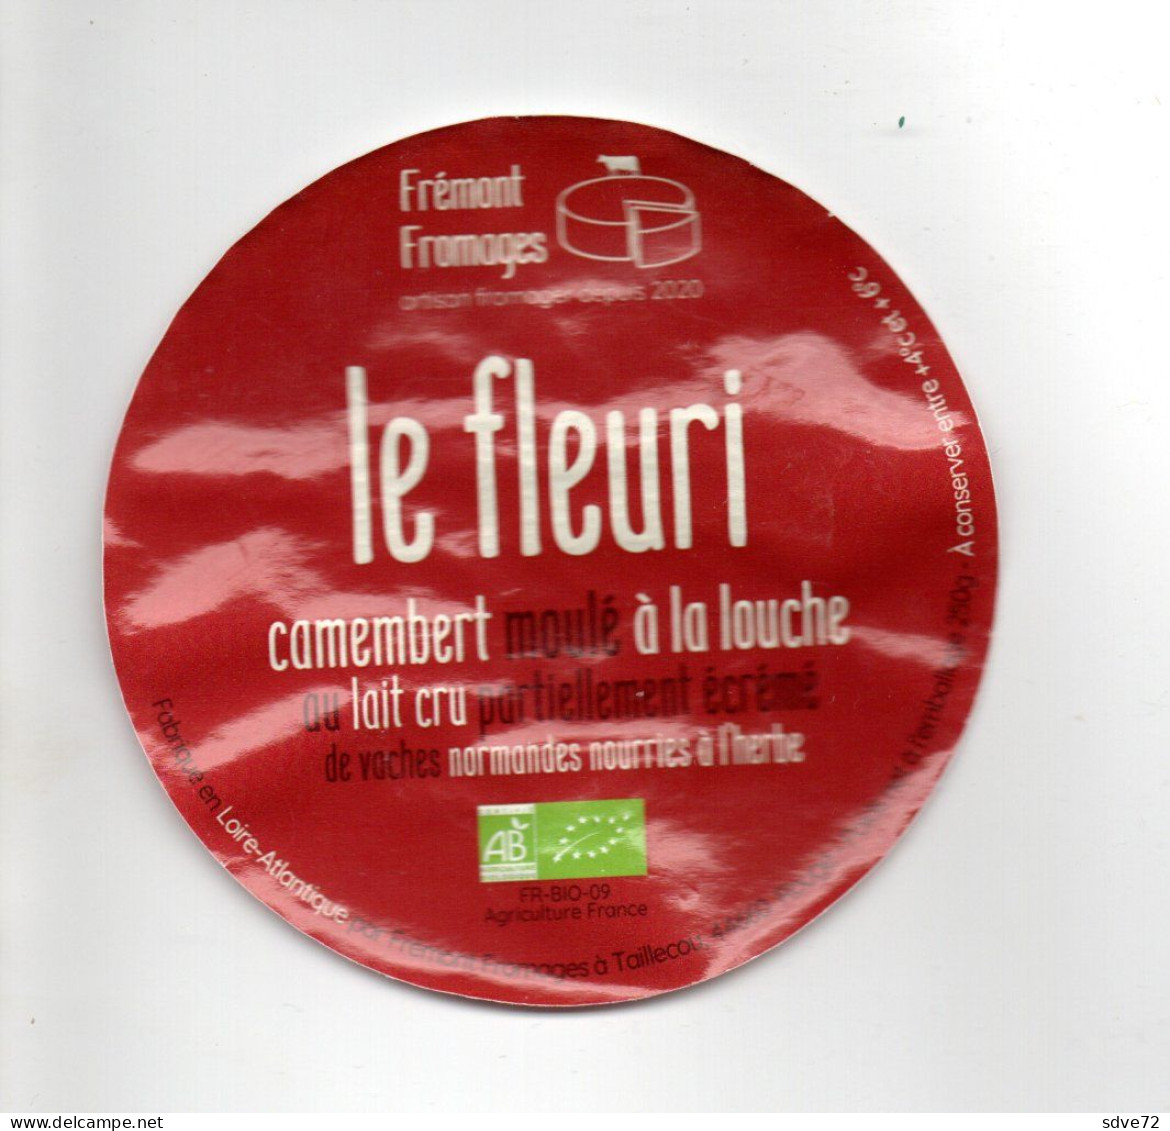 Etiquette De Fromage - Fremont Fromage - Le Fleuri - Kaas